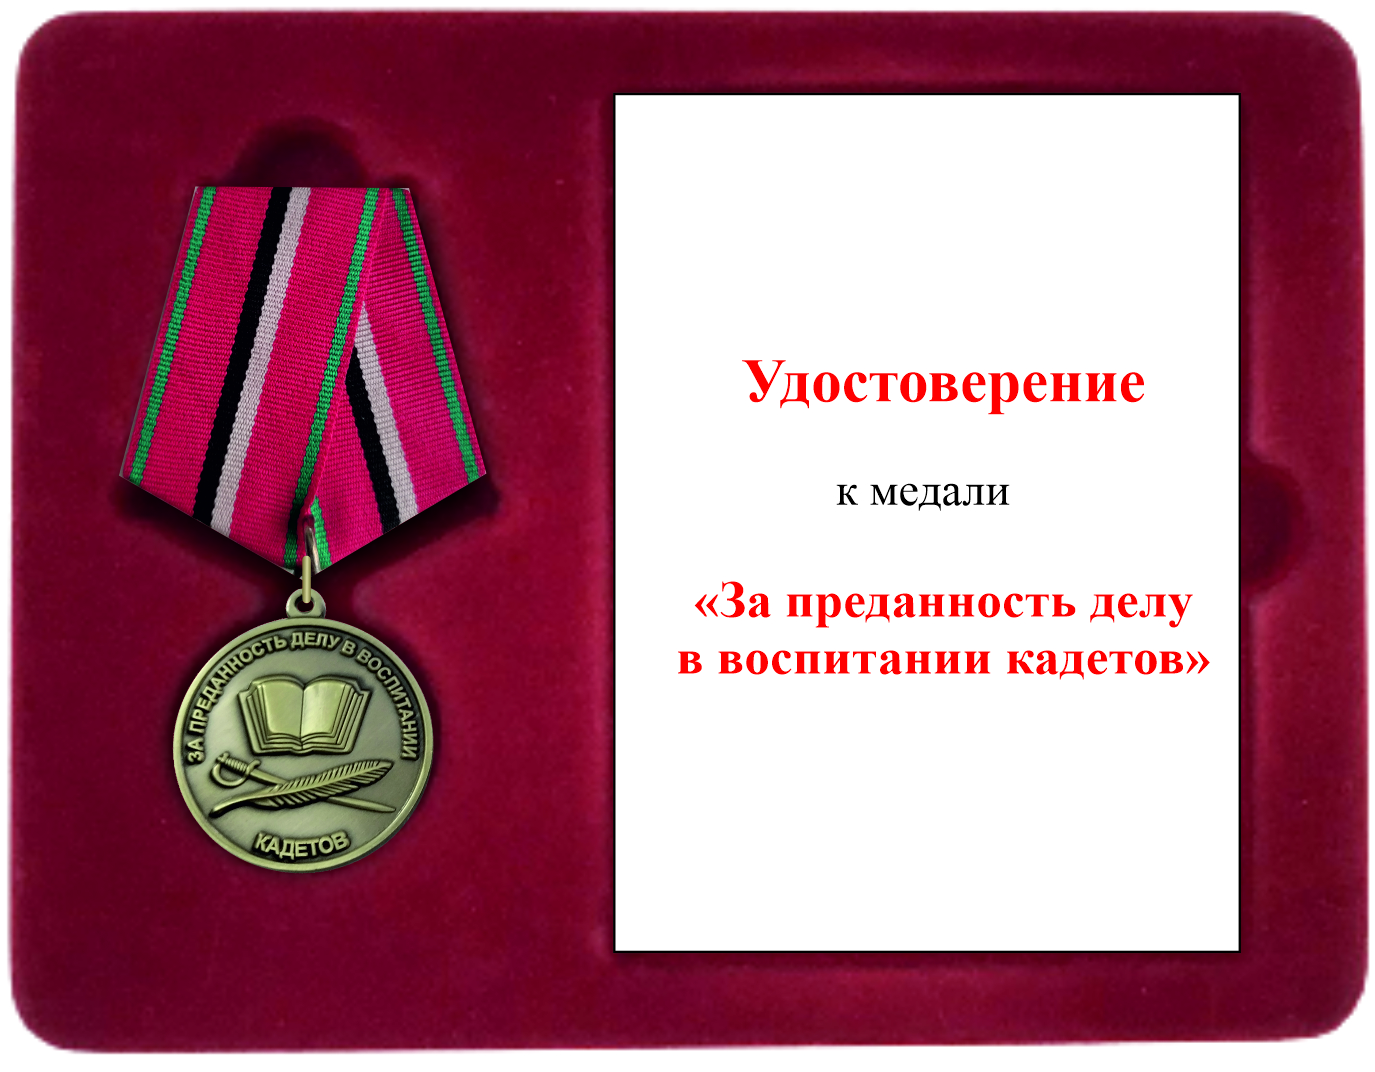  Футляр с медалью «За преданность делу в воспитании кадетов»